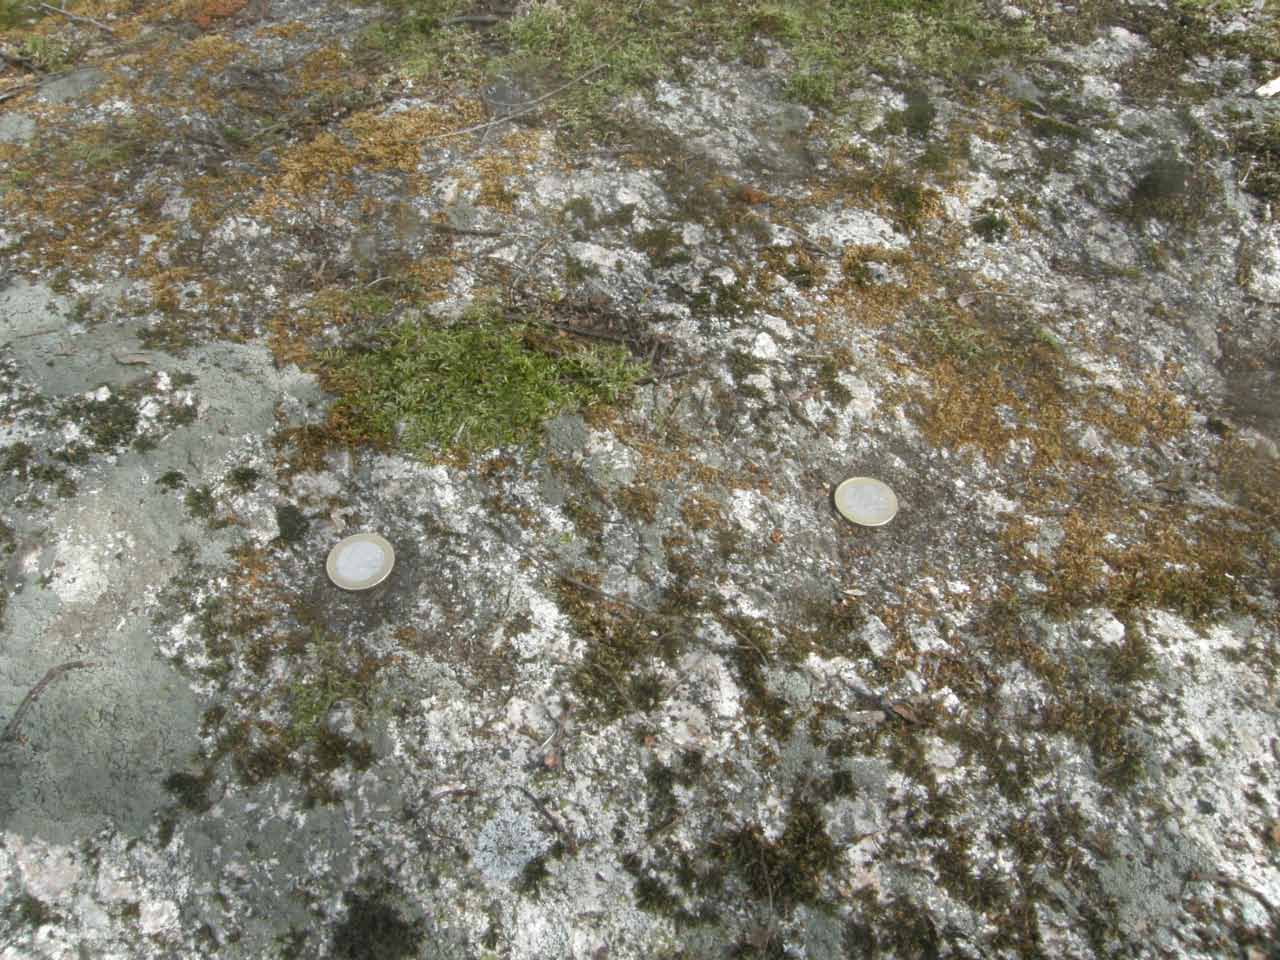 Kuva: Kivessä on havaittu neljä kuppia, joista kolme varmoja. Kupit ovat matalia eivätkä erotu kovin hyvin kiven karkealta pinnalta. Kuvassa kaksi selvintä kuppia on merkitty kolikoilla. Lahden museot / Päijät-Hämeen alueellinen vastuumuseo. CC BY 4.0 Antti Bilund 4.5.2021